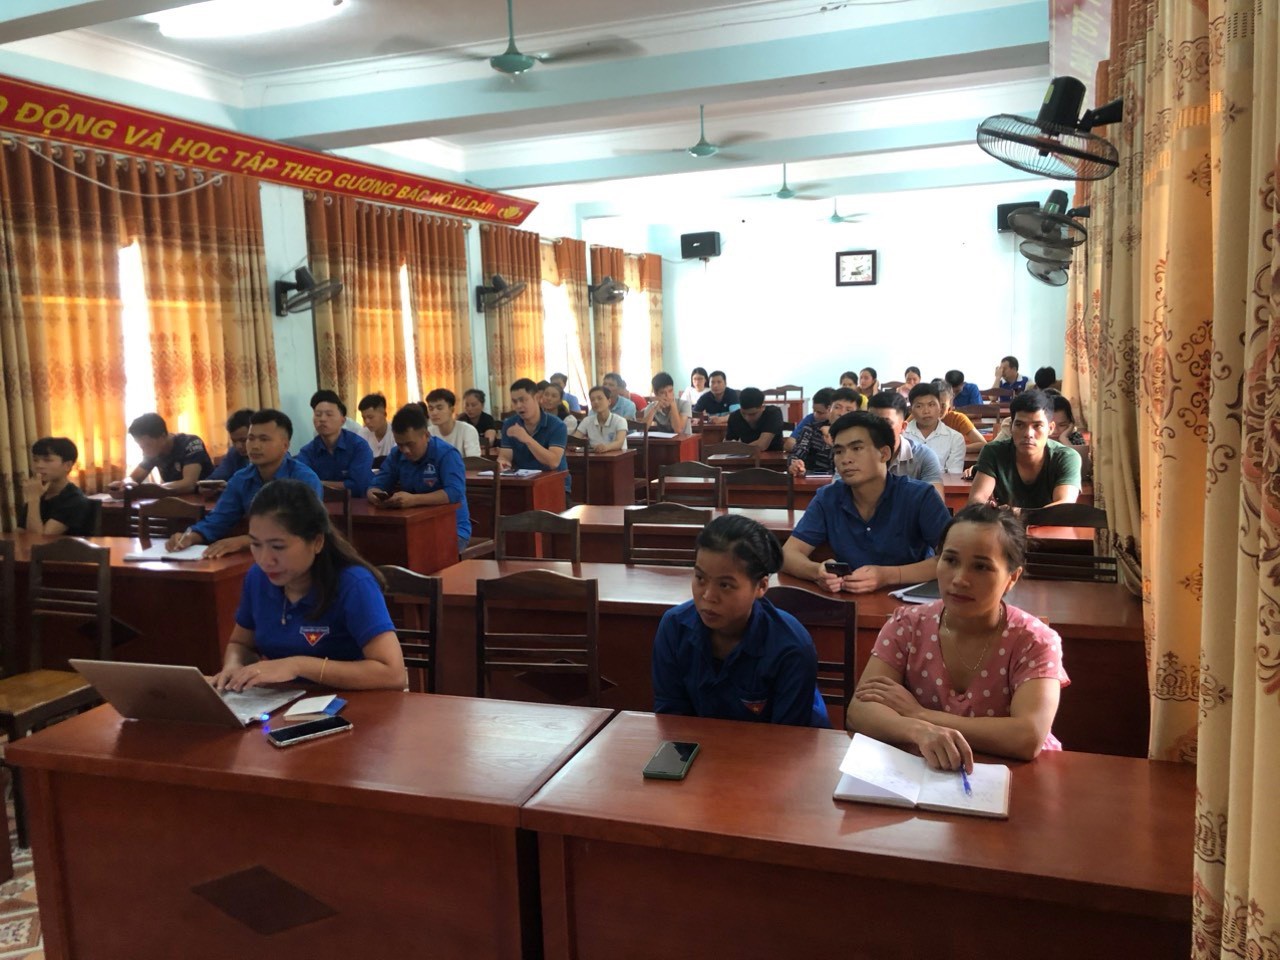 TVăn phòng Tư vấn và Tiếp nhận hồ sơ tỉnh Hà Giang tổ chức giới thiệu việc làm cho cán bộ đoàn thuộc trường học, cấp huyện và cấp xã